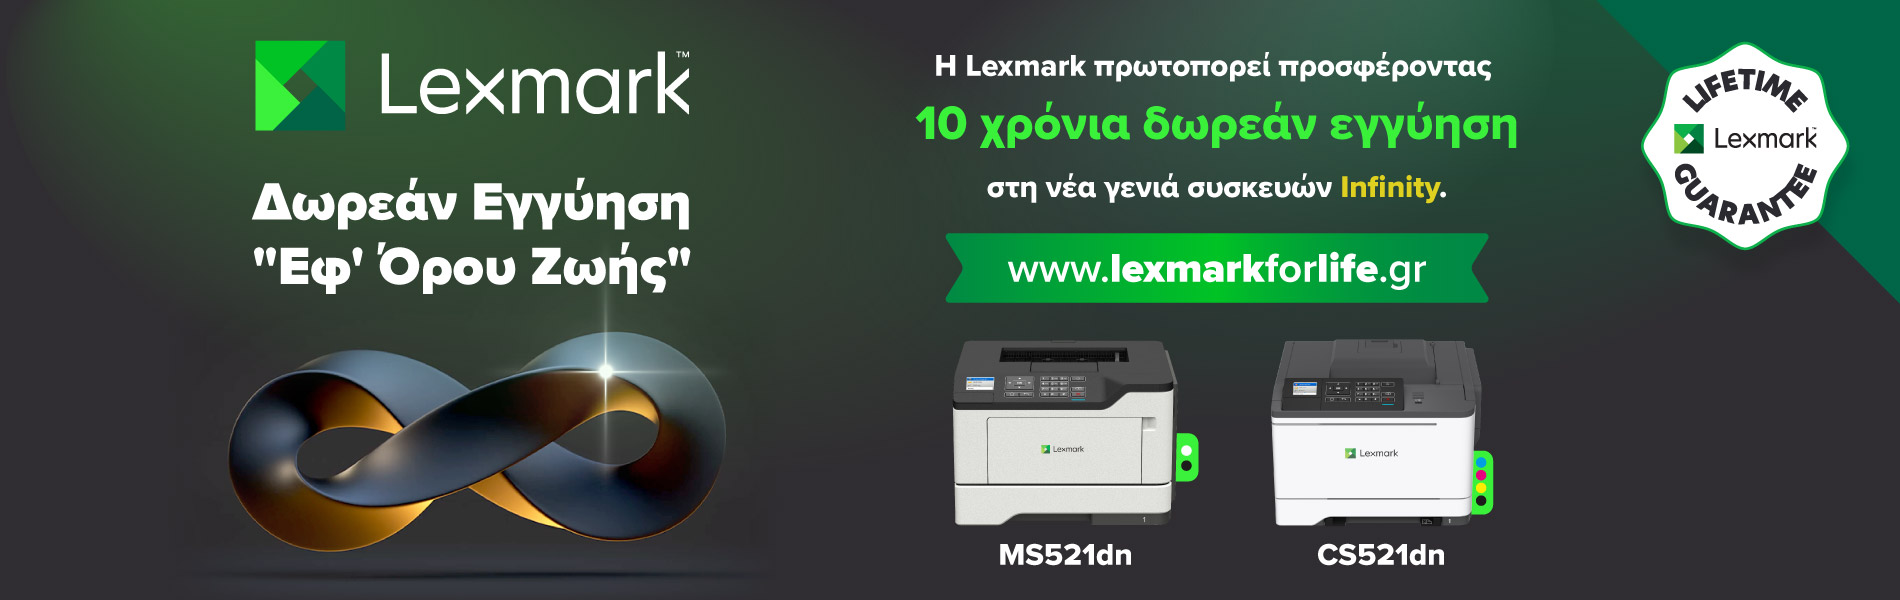  Η εικόνα παρουσιάζει το πρόγραμμα Lexmark Infinity για επέκταση εγγύησης στο Lexmark CS521dn σε έως και 10 έτη!